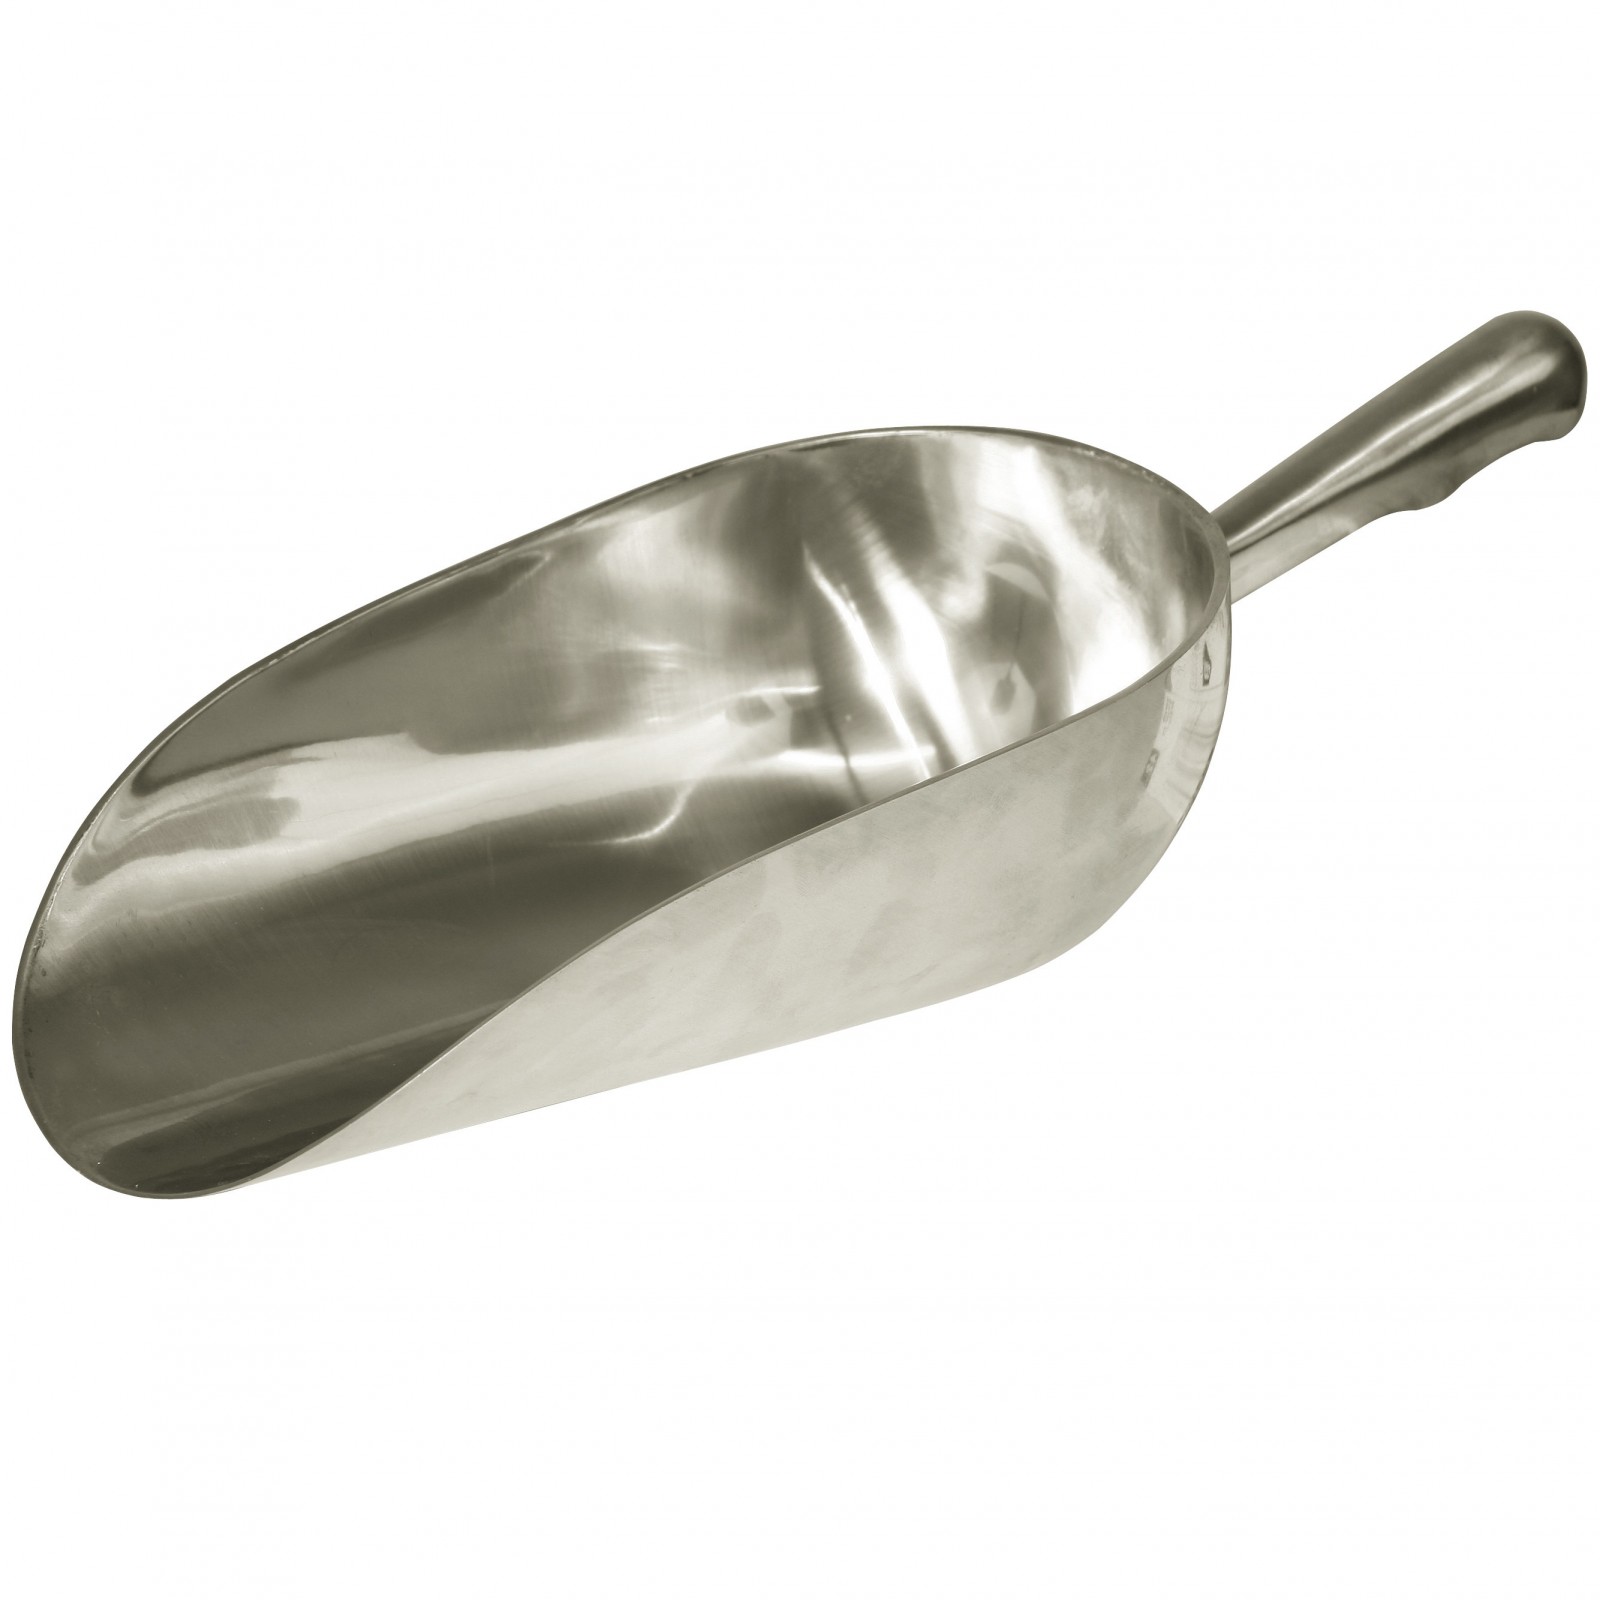 Feed scoop aluminium round 900 g